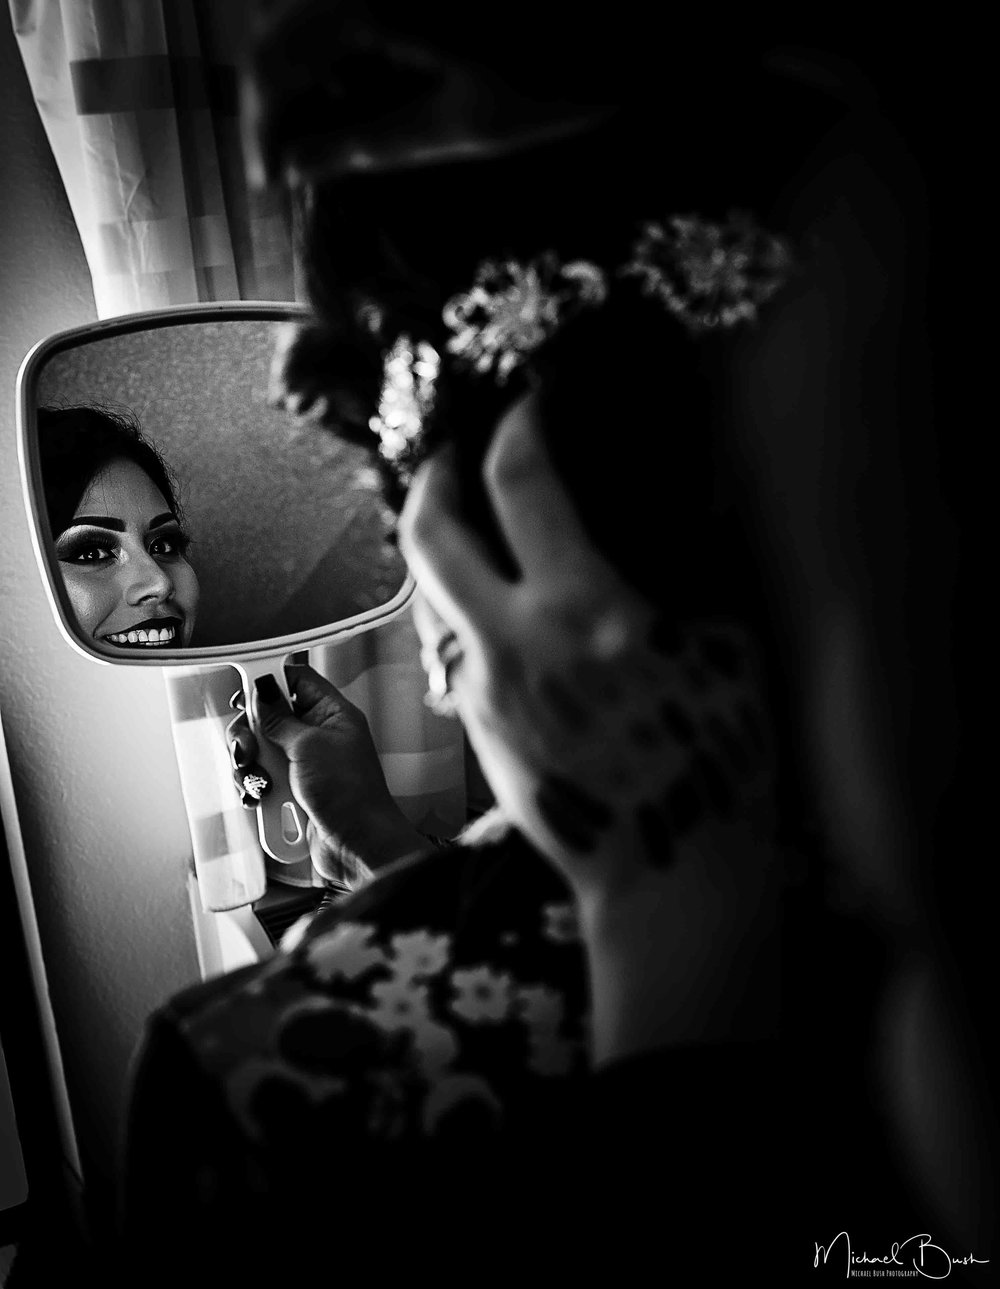 Wedding-Details-Bride-Fort Worth-colors-Getting Ready-MUA-brides-b&w-reflection-mirror.jpg